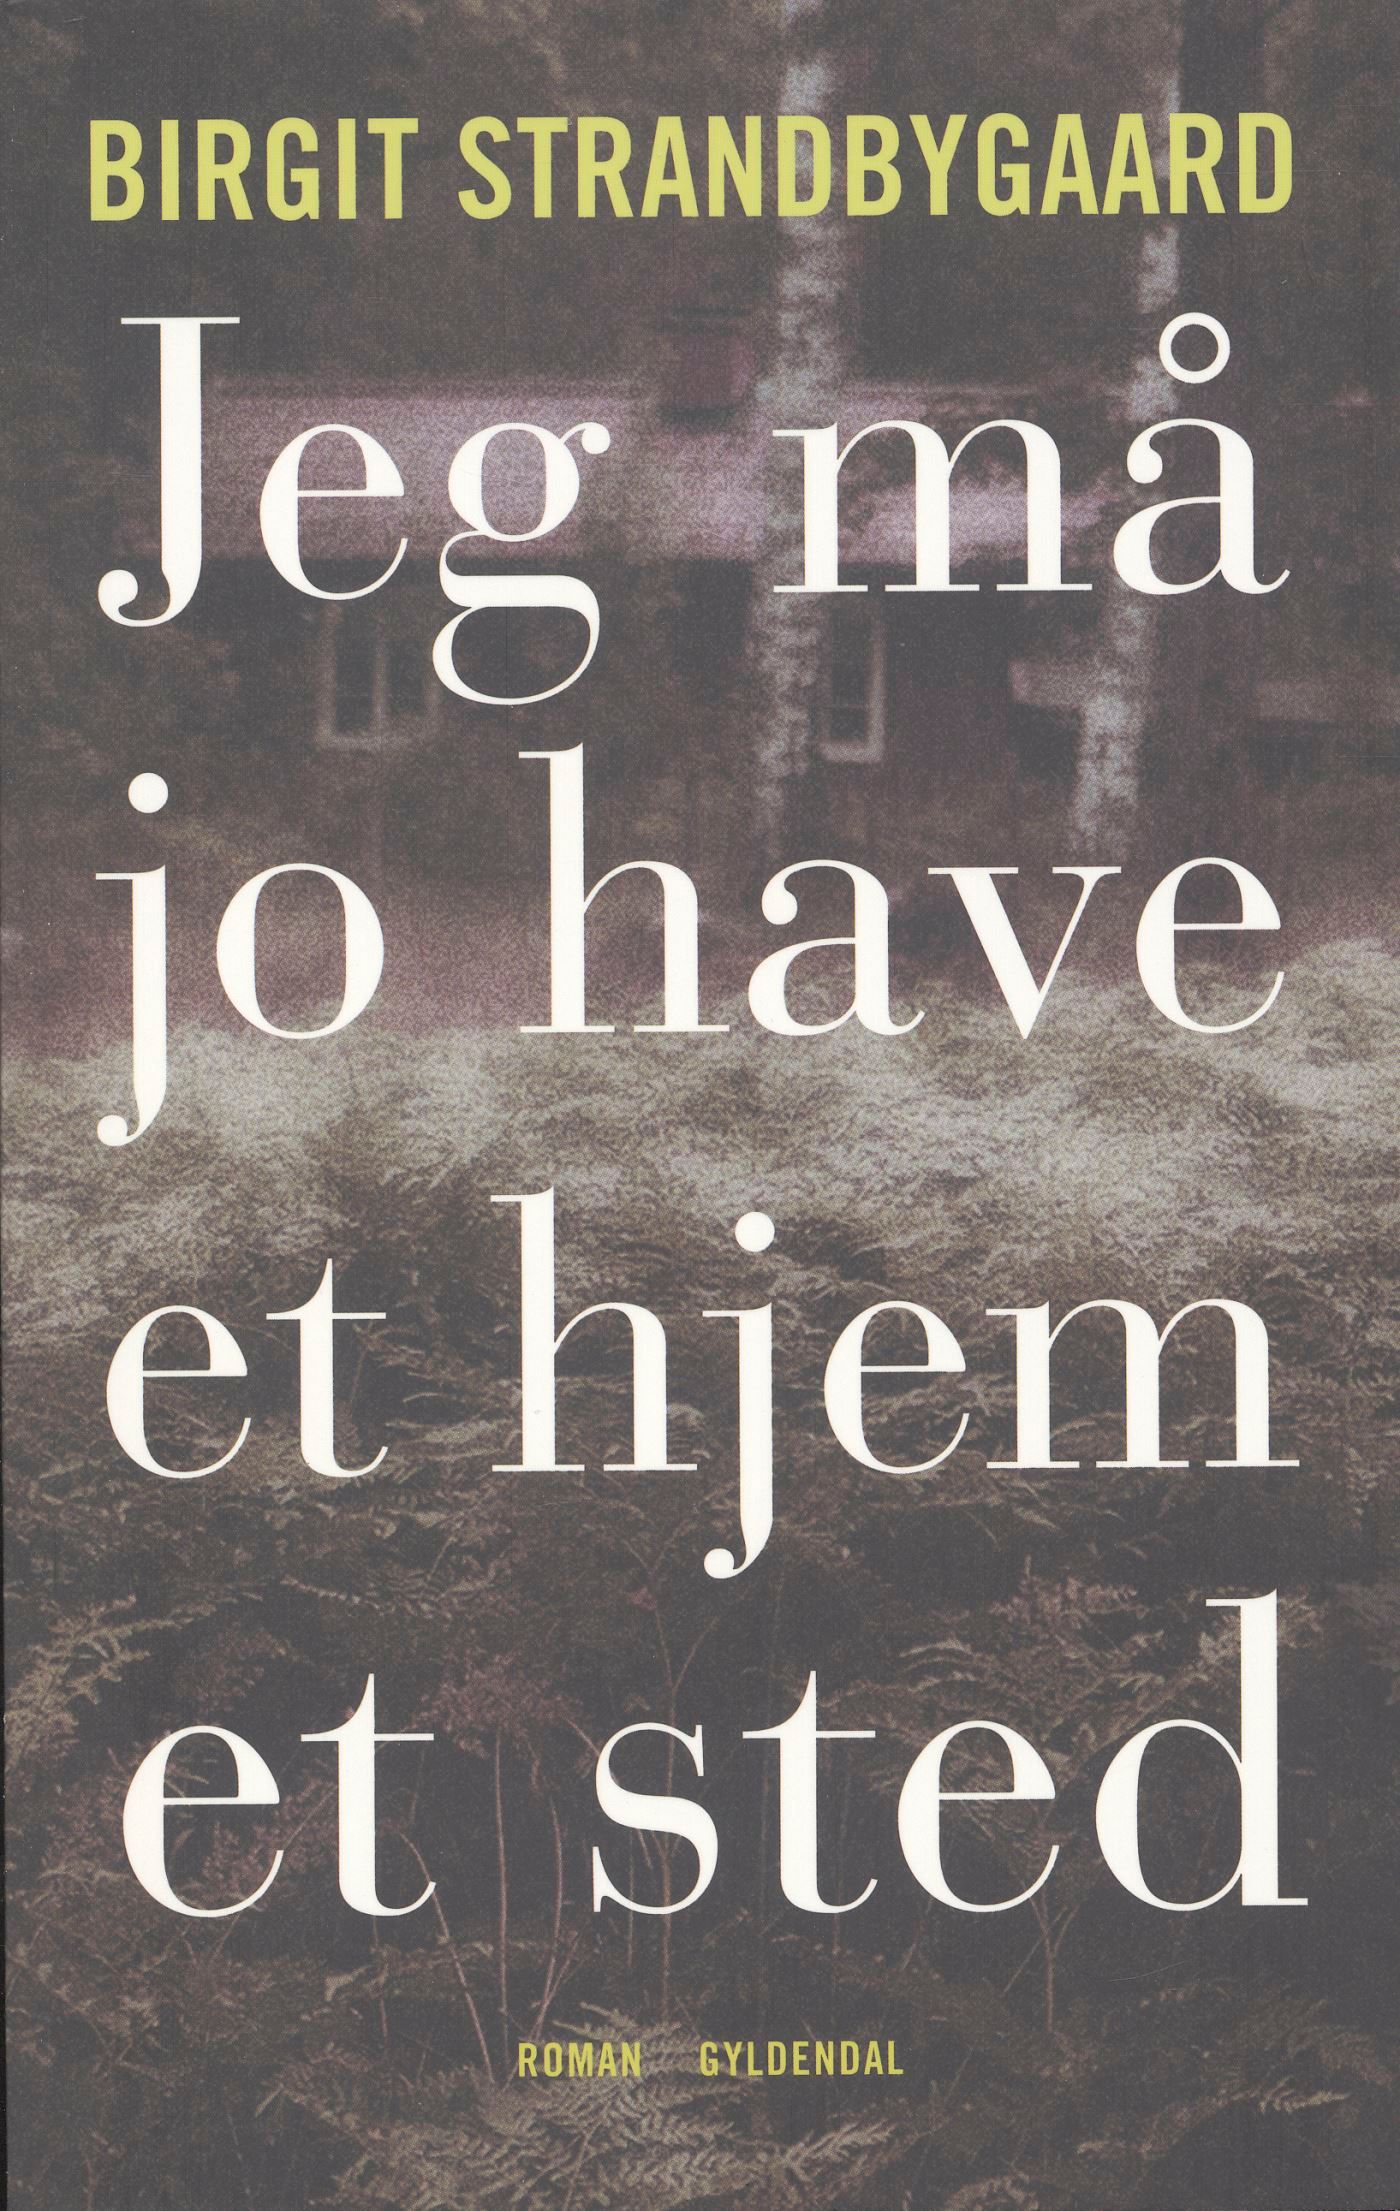 Jeg må jo have et hjem et sted, lydbog af Birgit Strandbygaard